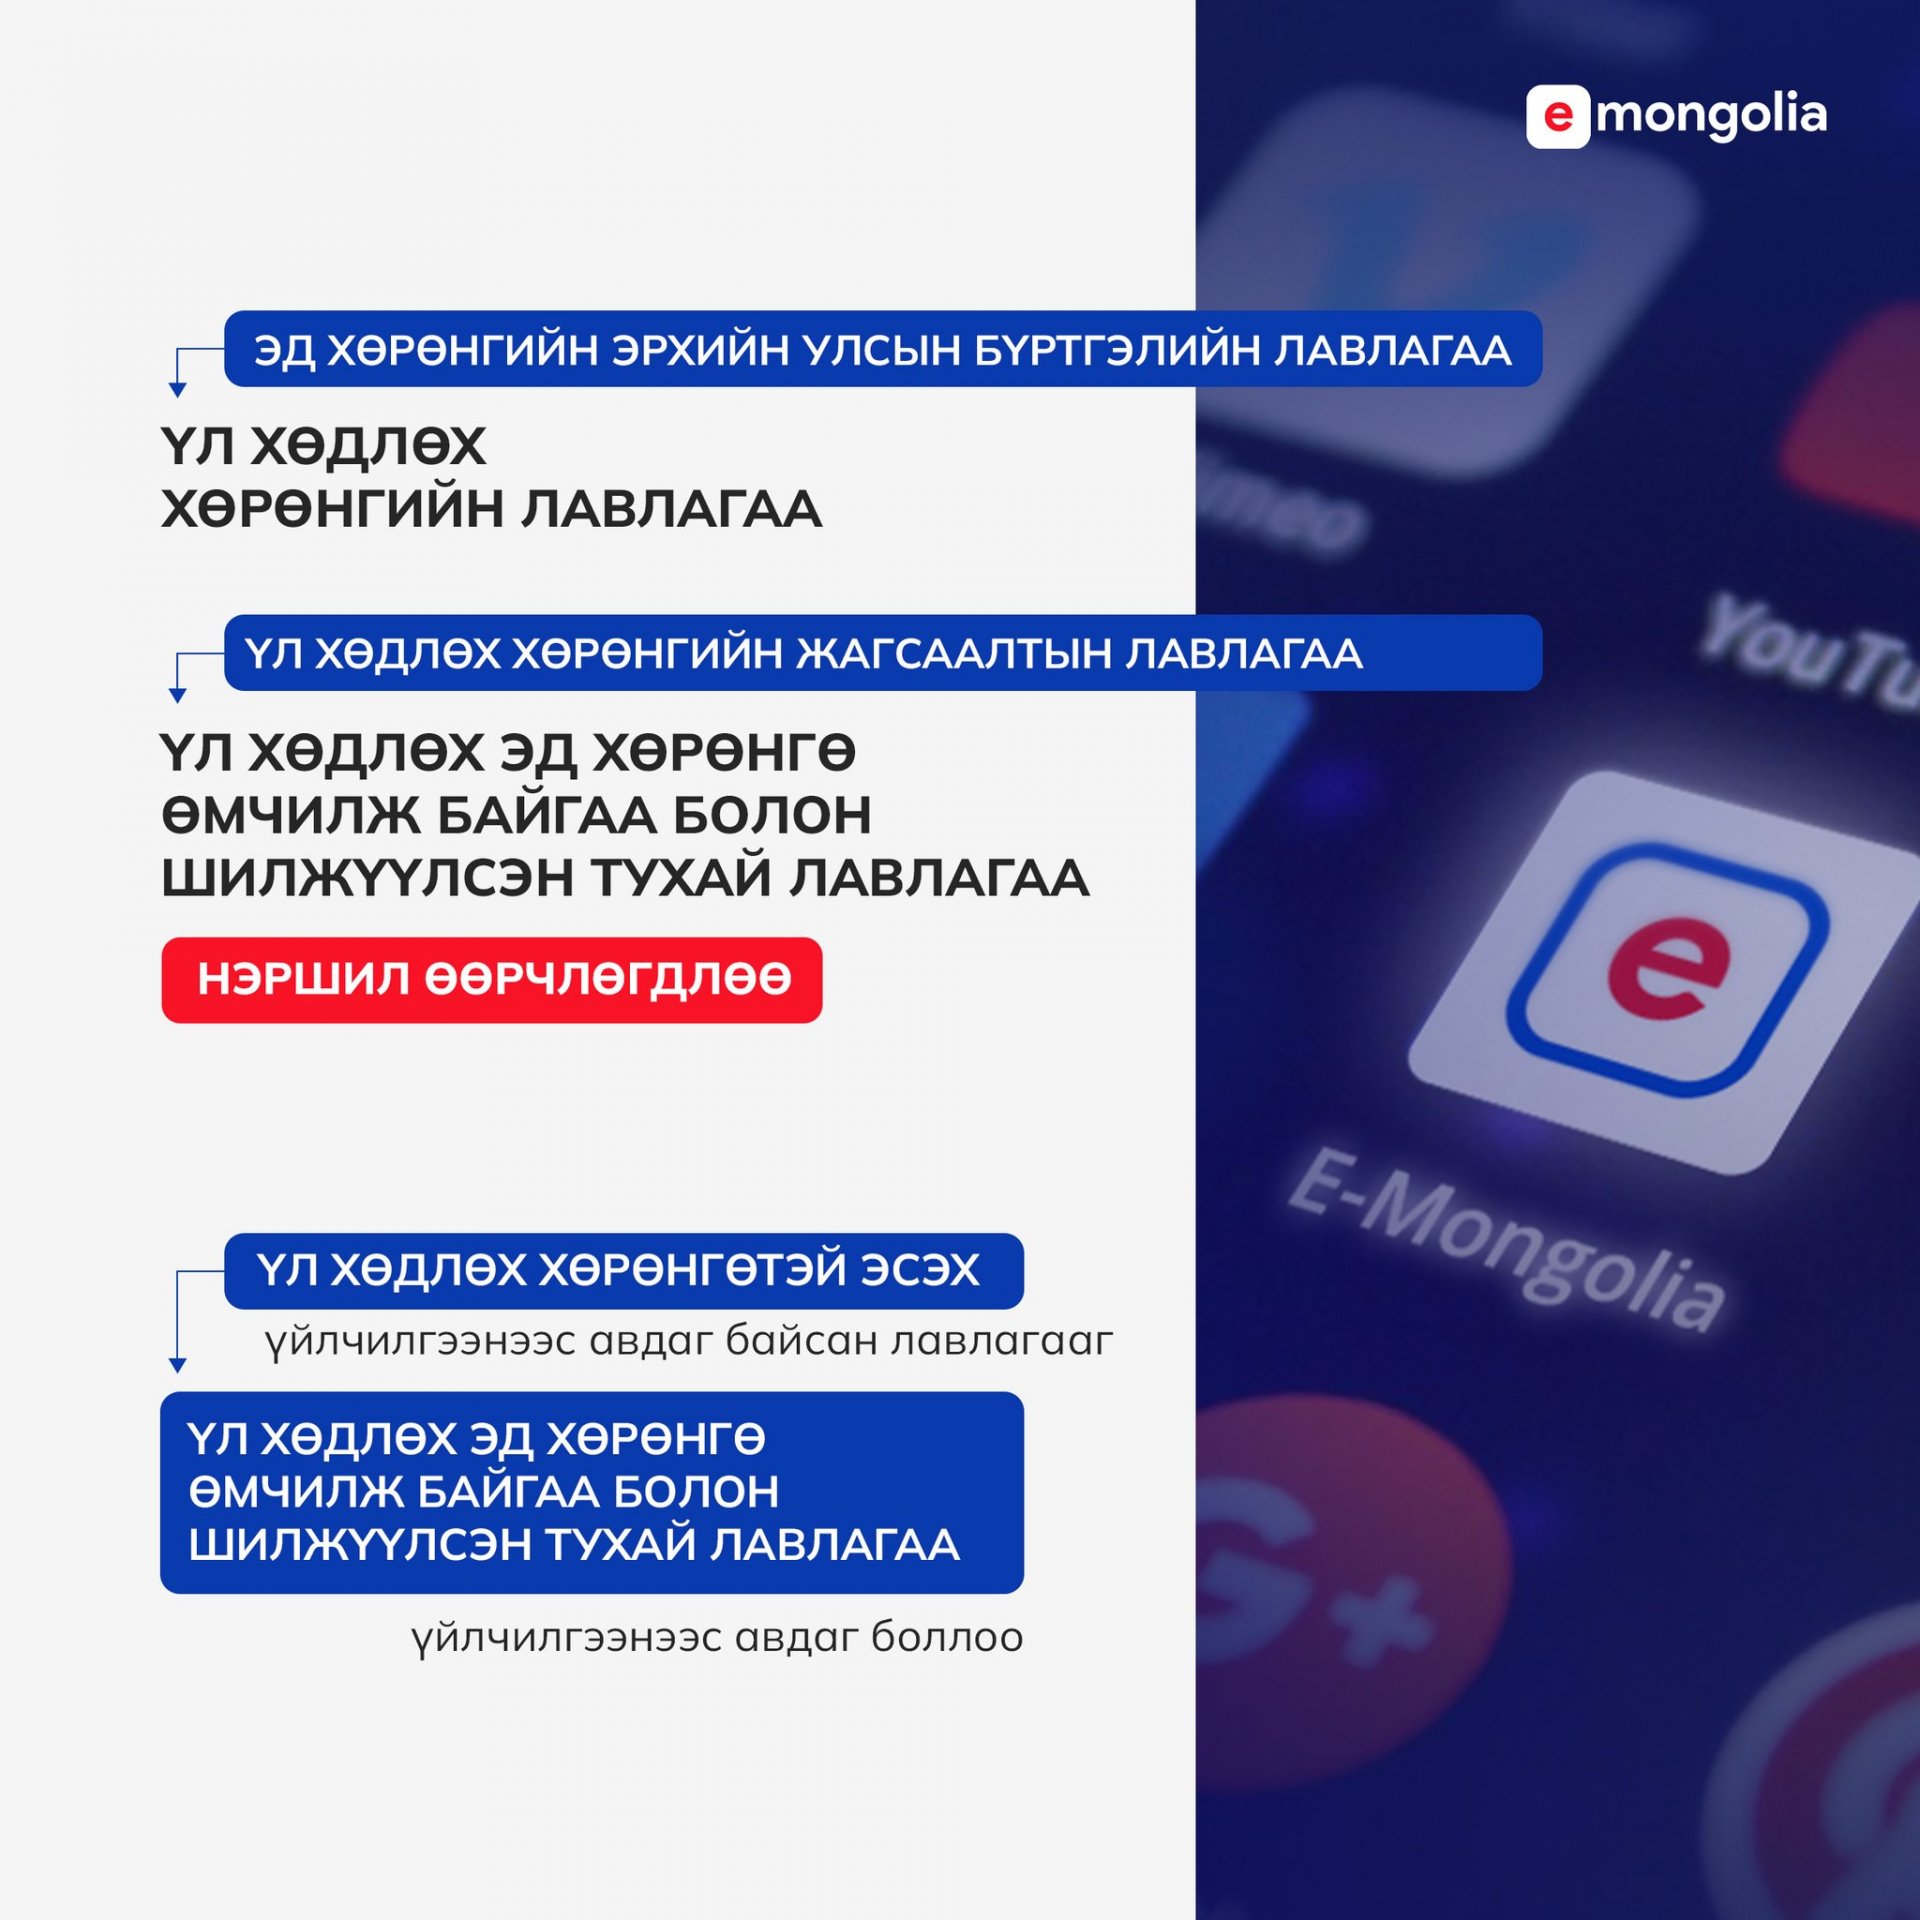 E-Mongolia платформоос авдаг Үл хөдлөх хөрөнгийн жагсаалтын лавлагааны нэршил өөрчлөгдлөө.